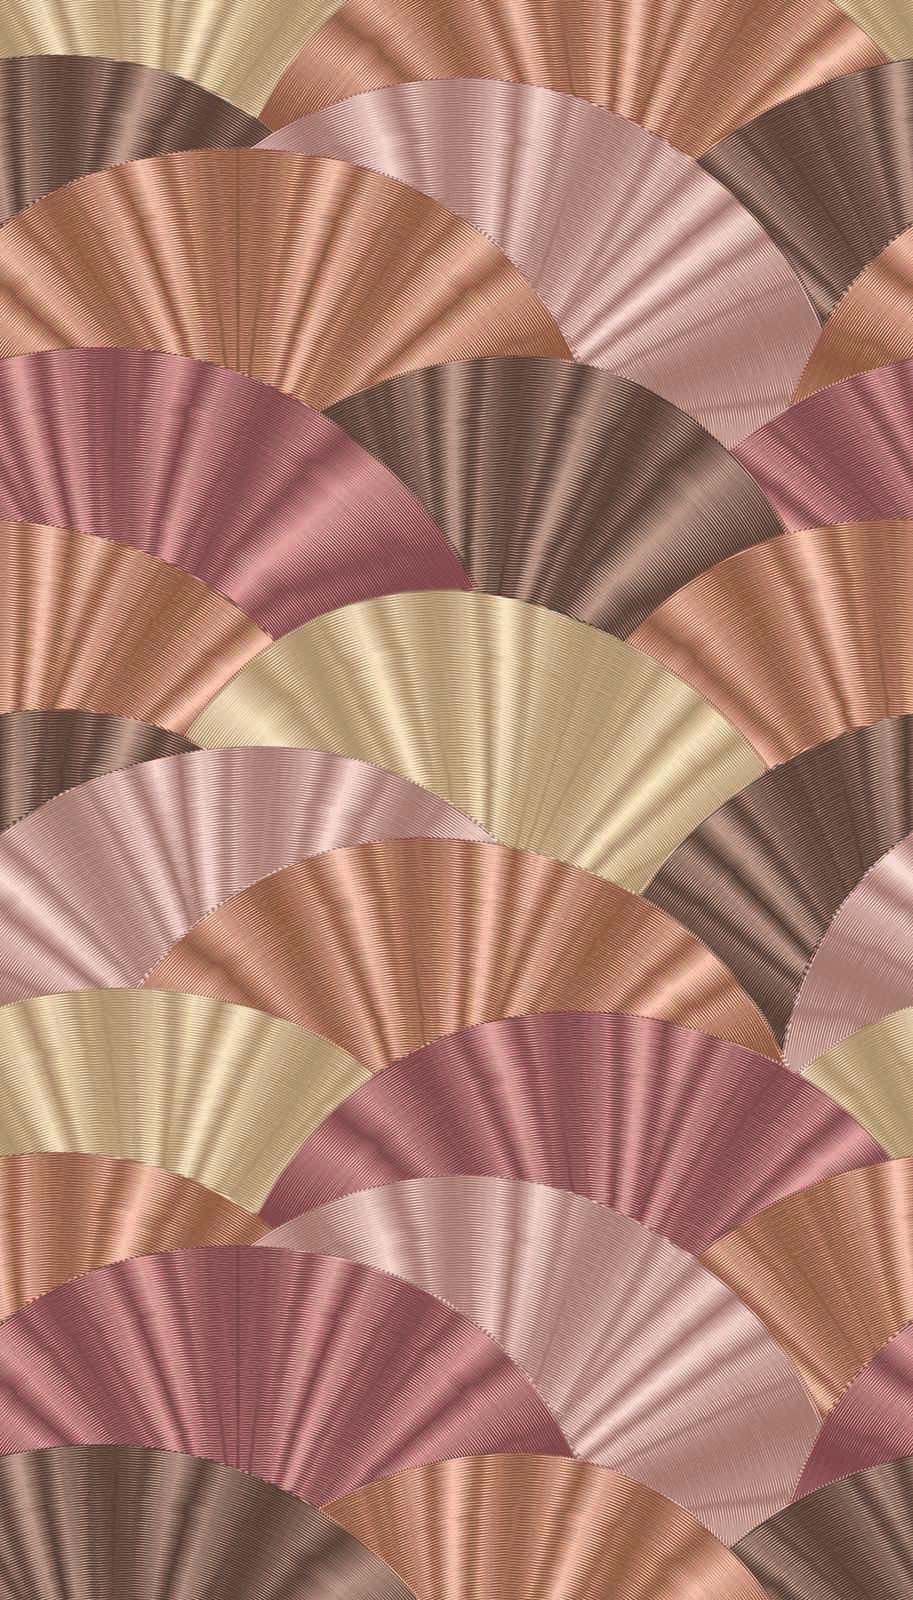             Papier peint intissé avec motif en éventail dans des tons doux - rose, crème, beige
        